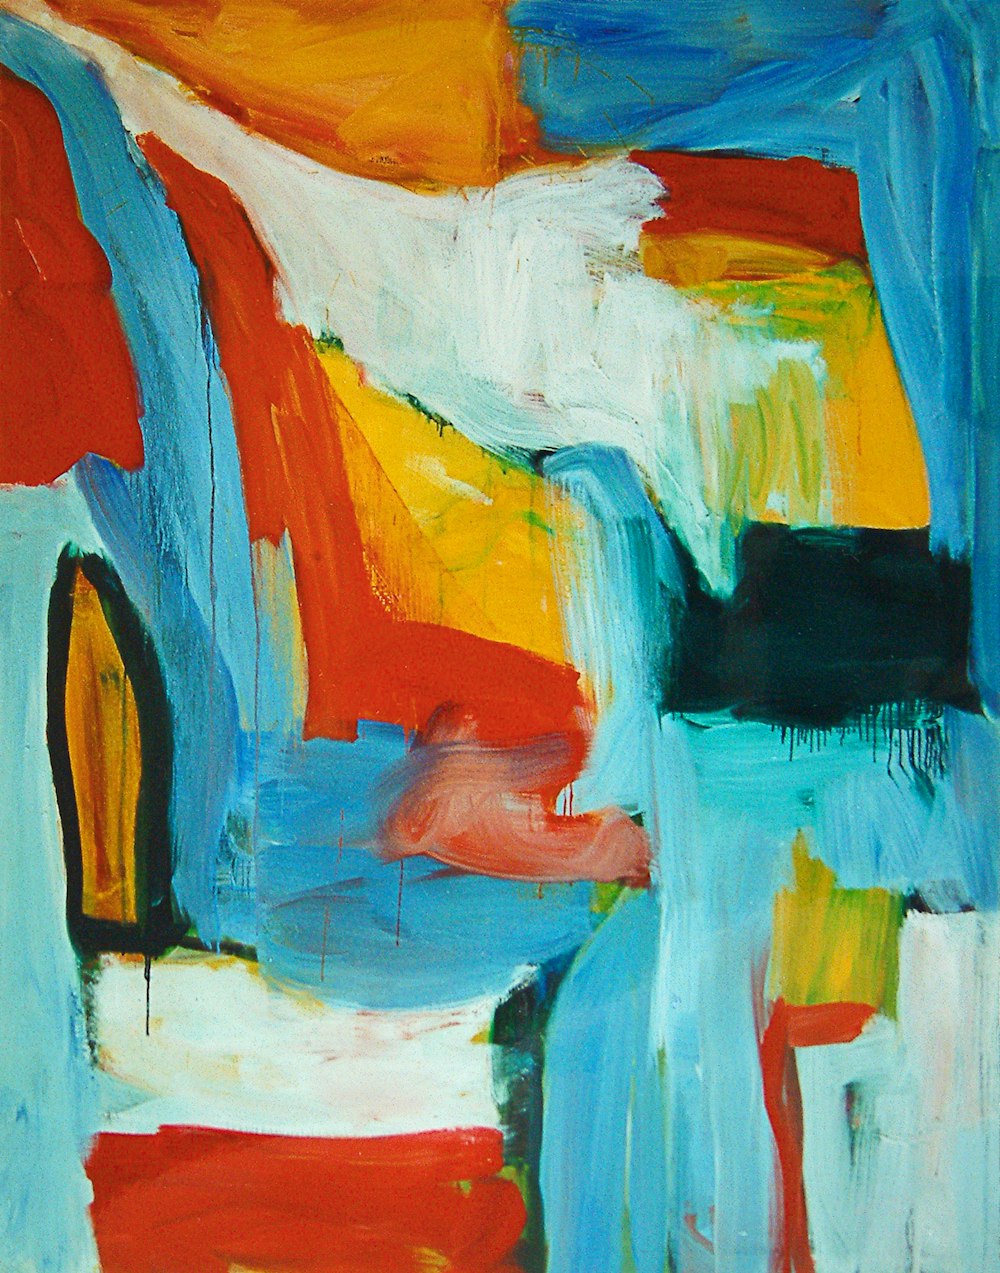 une peinture abstraite de bleu, rouge, jaune et orange